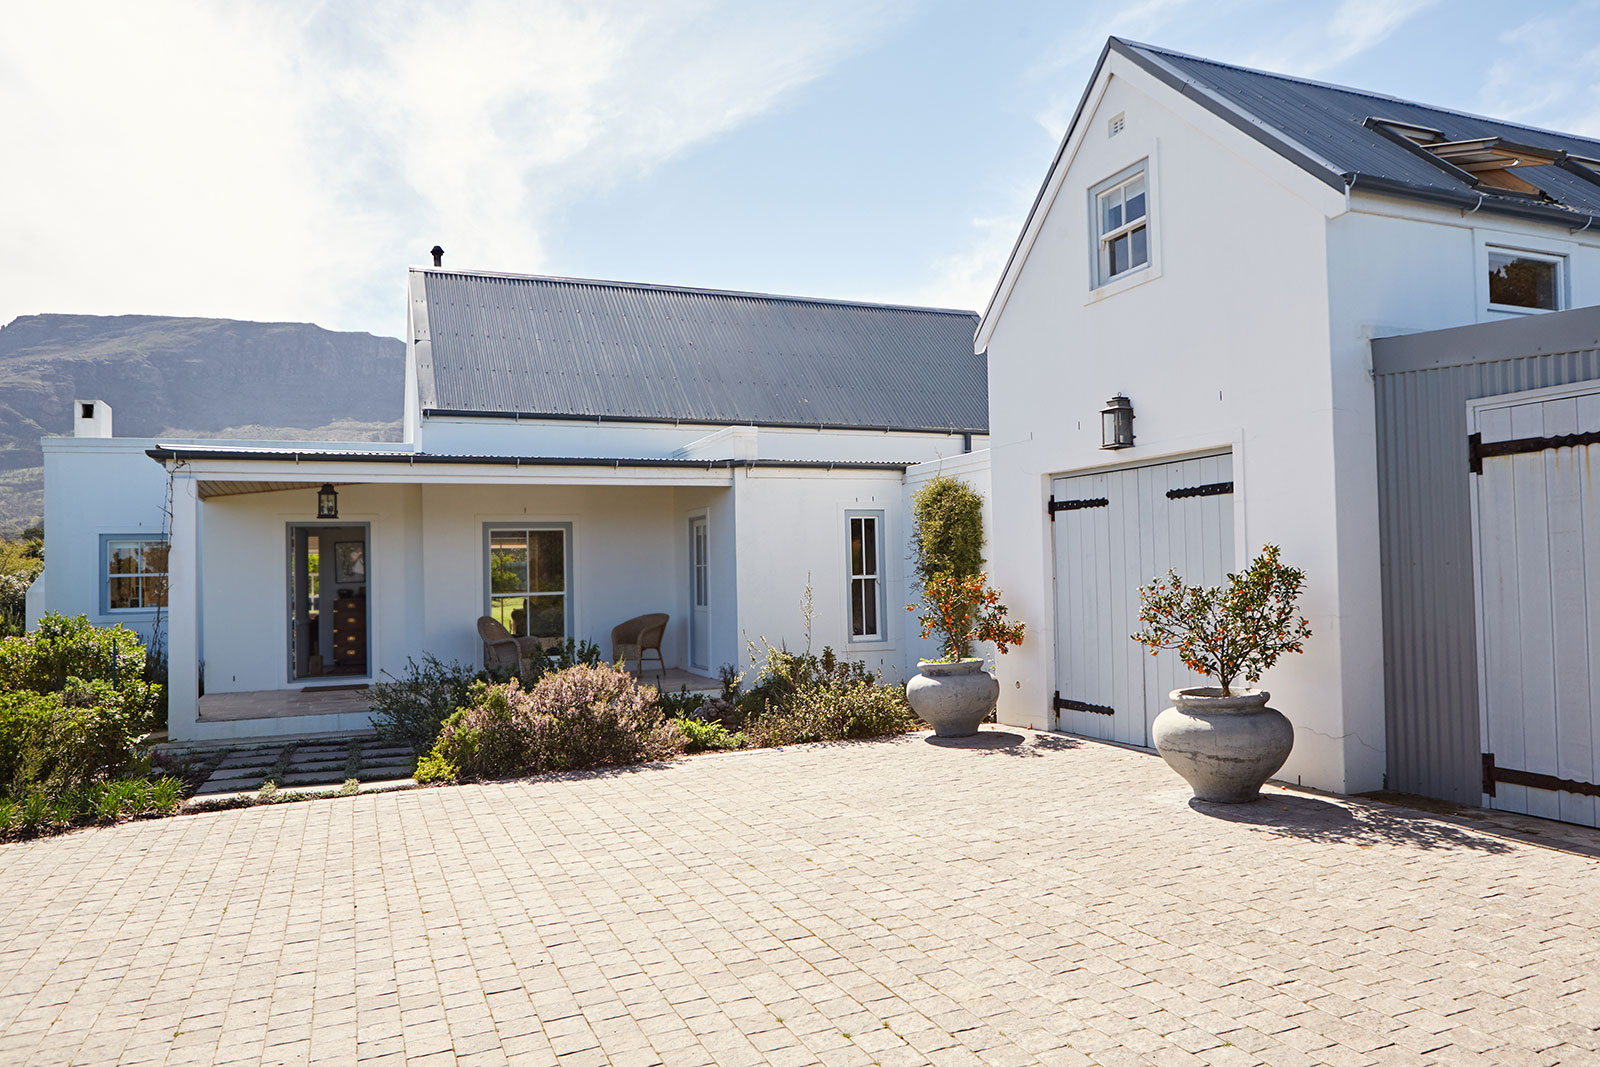 Weiß gestrichenes Wohnhaus mit grauem Dach, Garage und gepflastertem Hof